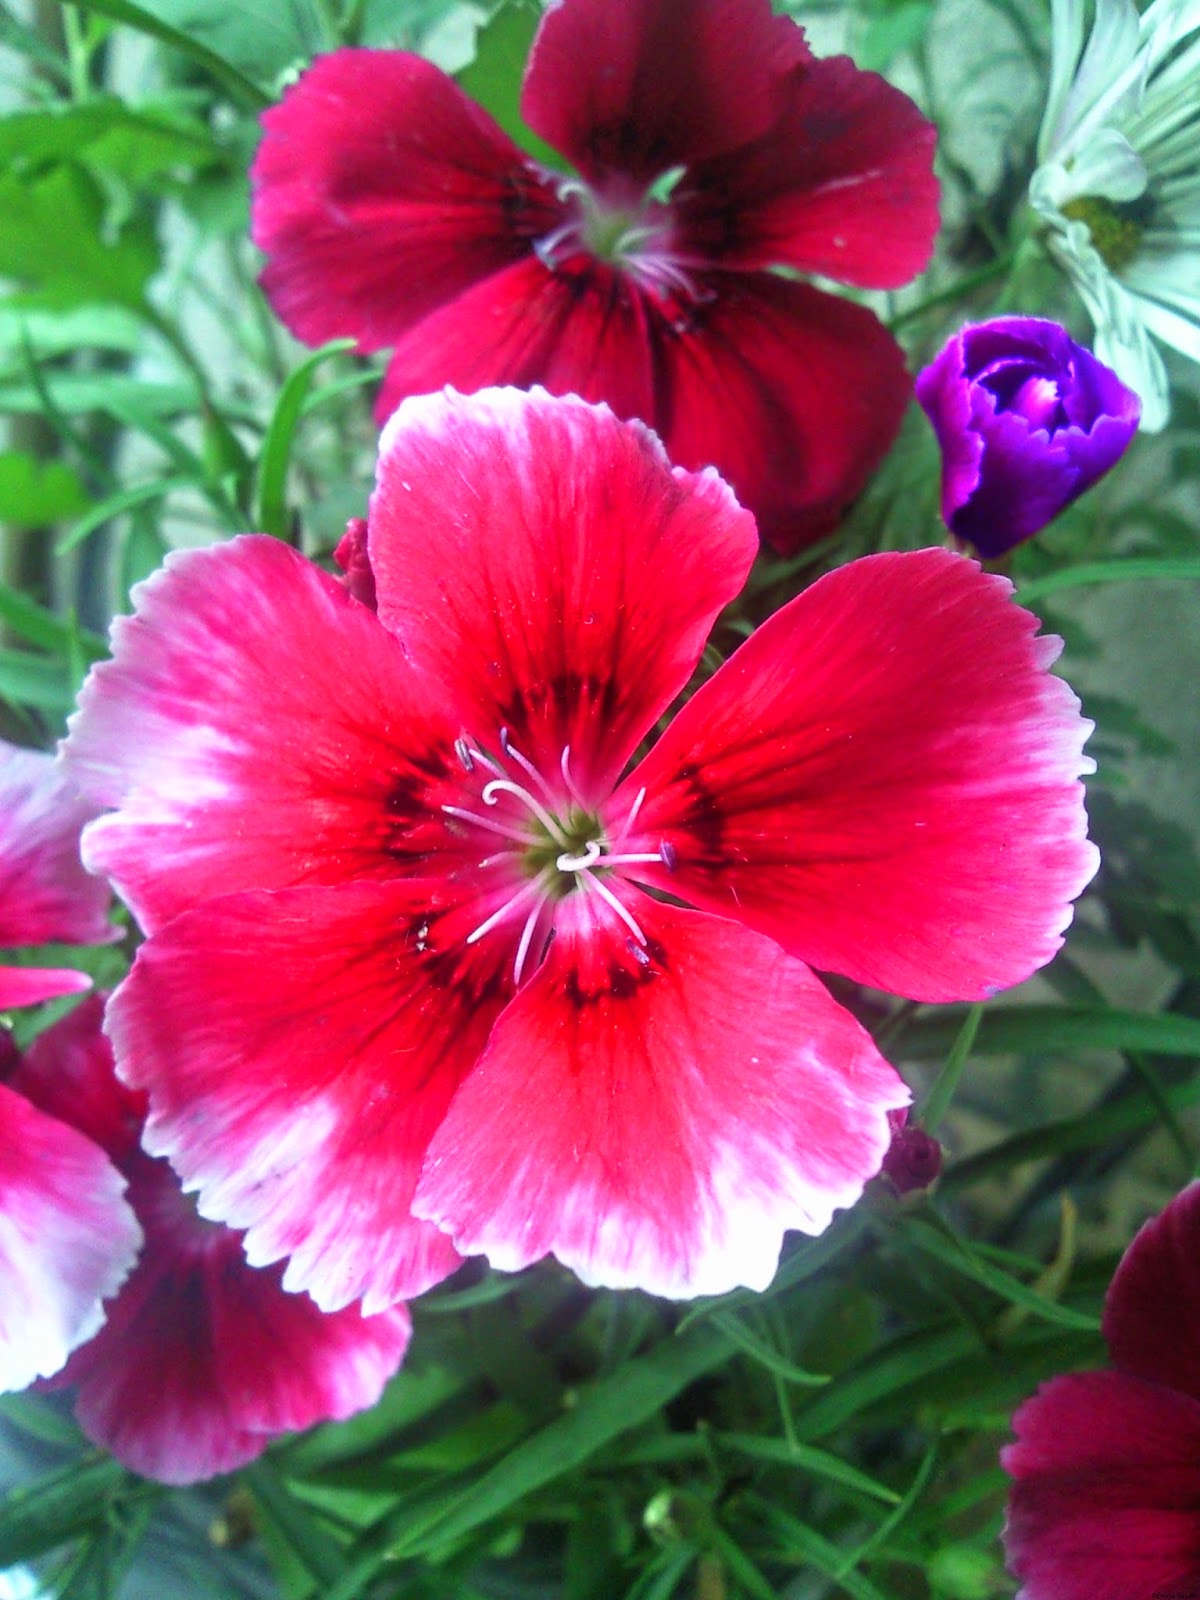 sfondi fiore hd 1080p,fiore,pianta fiorita,petalo,pianta,dolce william